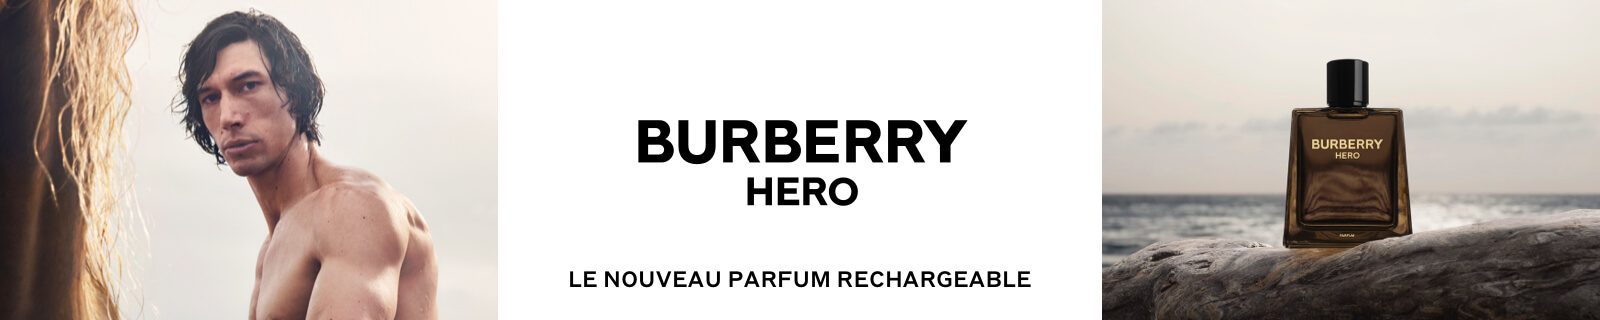 Bannière Burberry